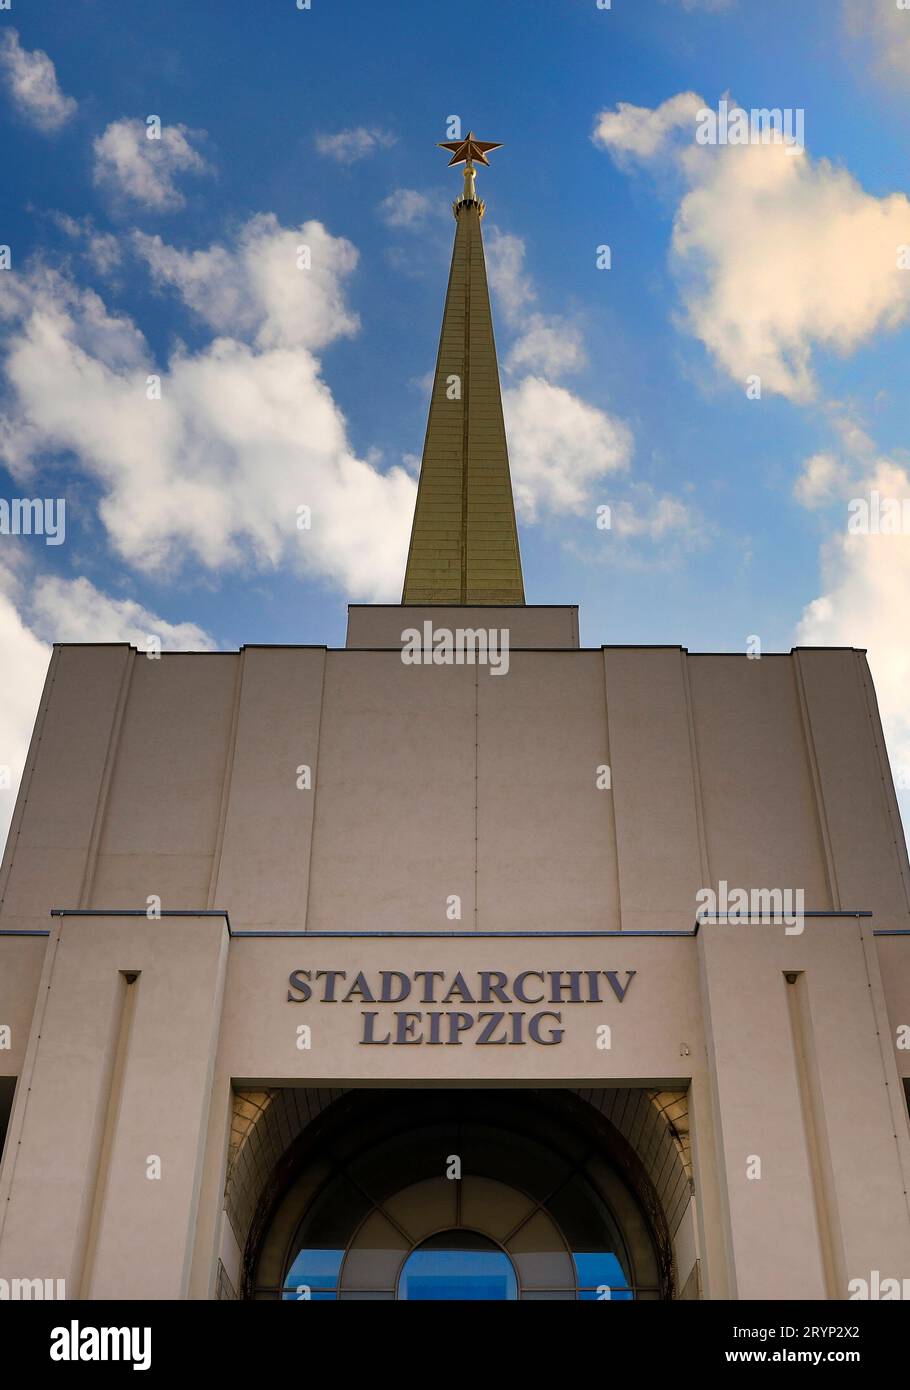 Stadtarchiv Leipzig, di fronte al nuovo archivio della città nell'ex padiglione sovietico, Lipsia, Germania Foto Stock